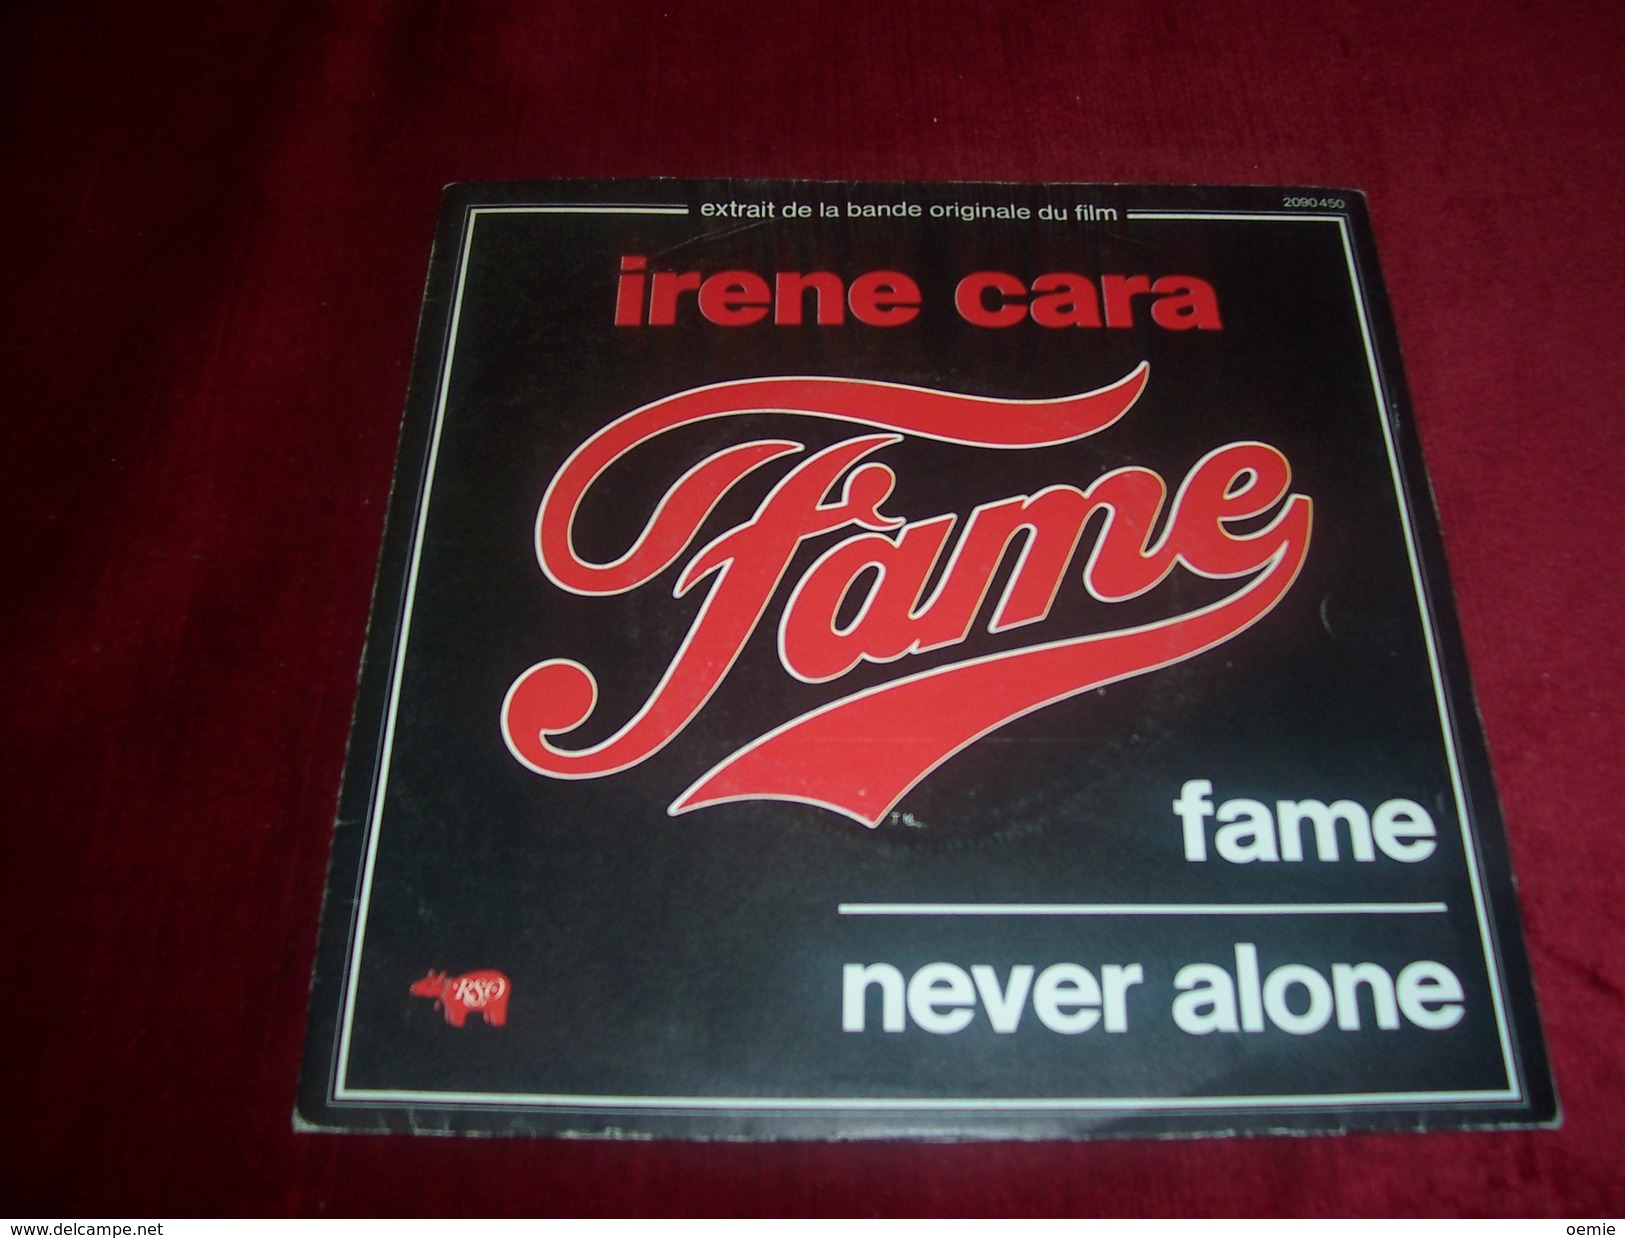 IRENE CARA   ° FAME / NEVER ALONE°°  BO  DU FILM  FAME - Soundtracks, Film Music